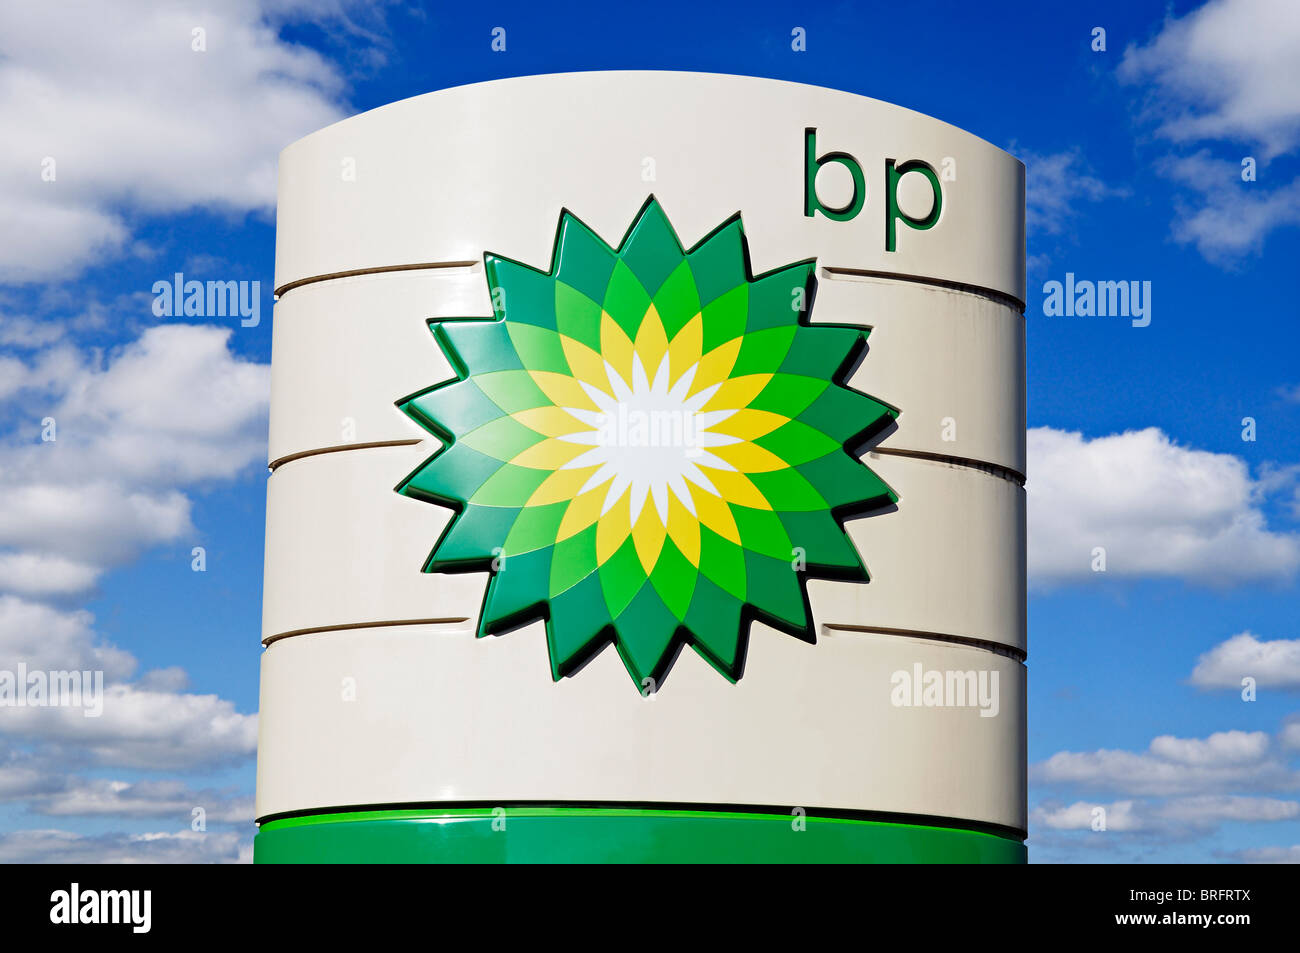 Inscrivez-BP, à un poste d'essence, UK. Banque D'Images